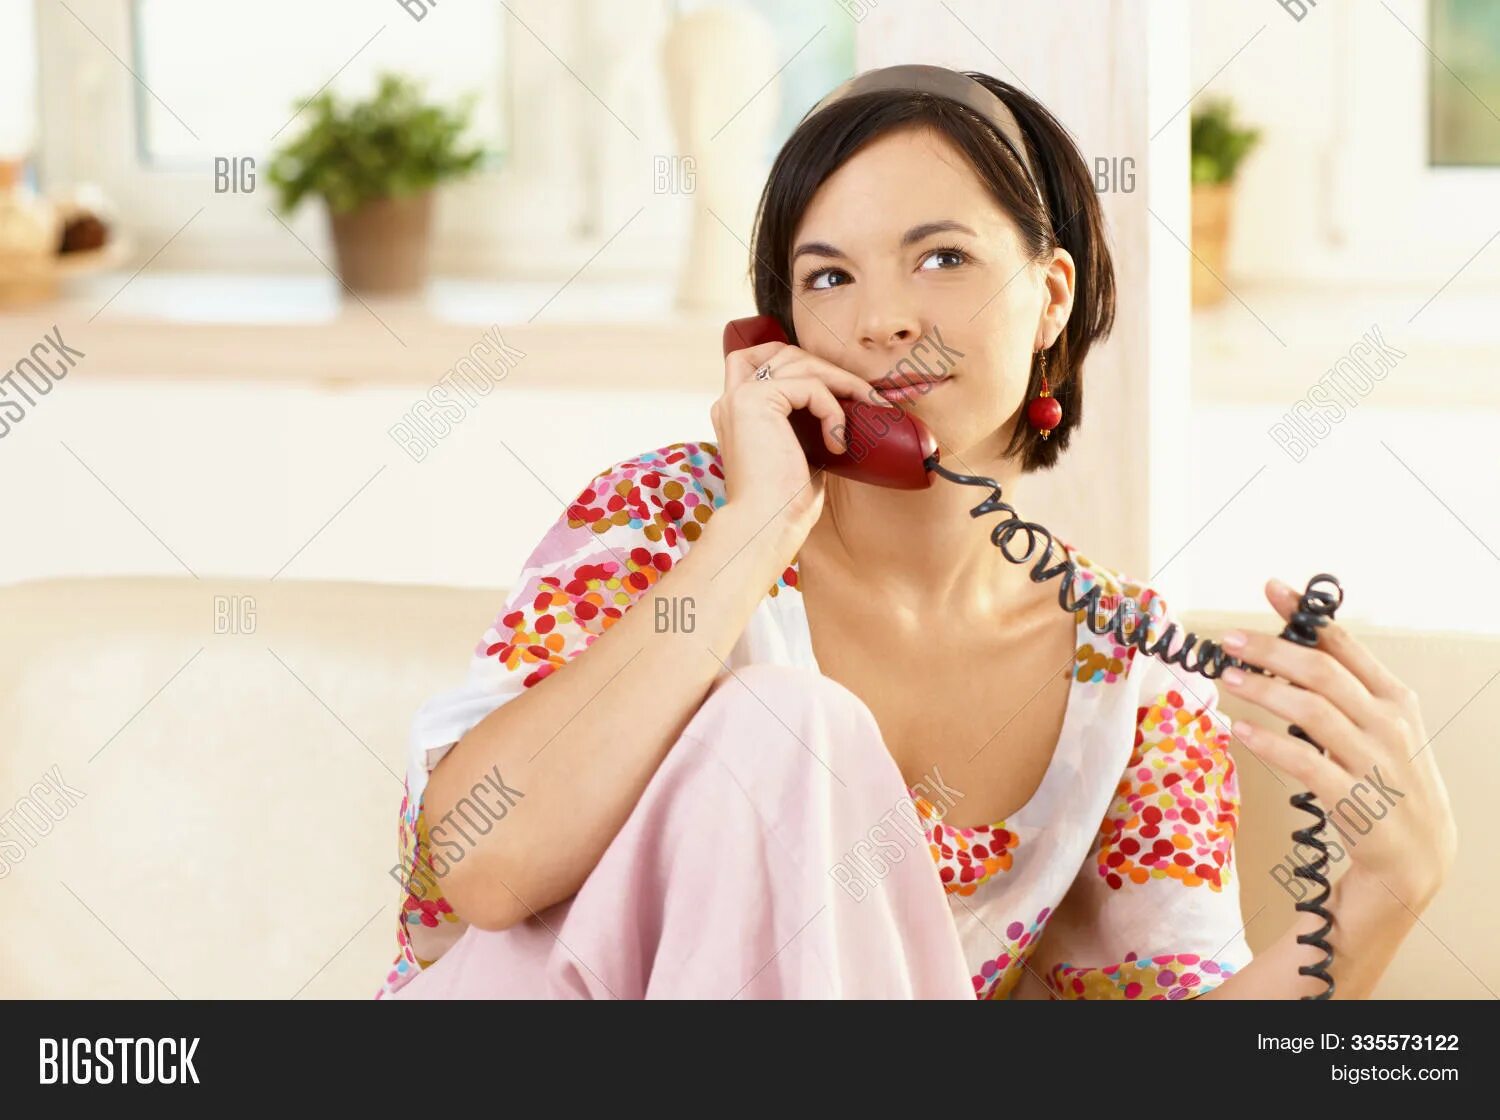 Карамелька разговаривает по телефону. Женщина говорит по телефону. Женщина звонит по домашнему телефону. Говорит по домашнему телефону. Женщина говорит по телефону домашнему.